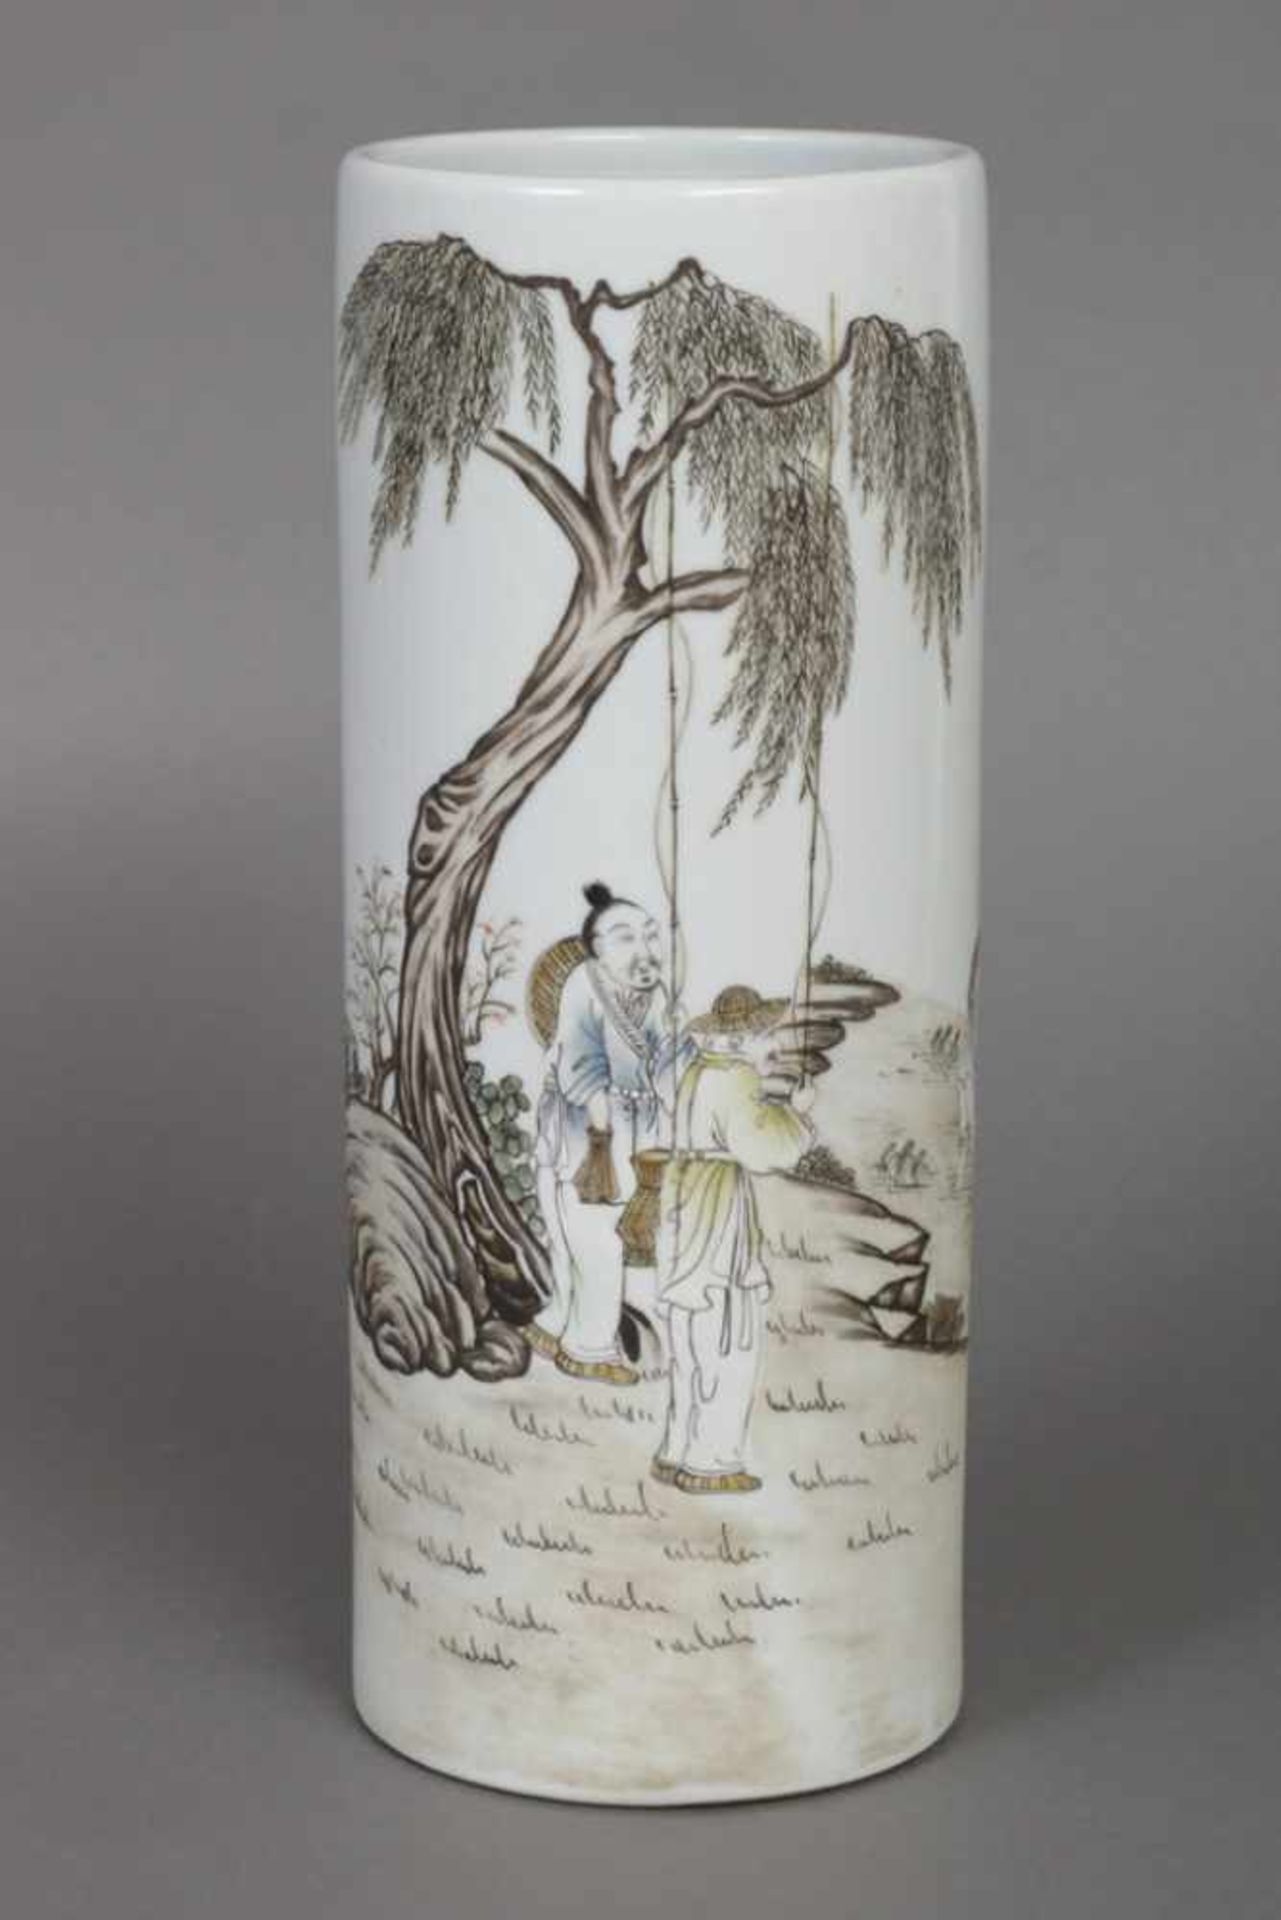 Hoher Pinselbecher/Vase Porzellan, hell glasiert, China, zylindrisches Gefäß mit umlaufender